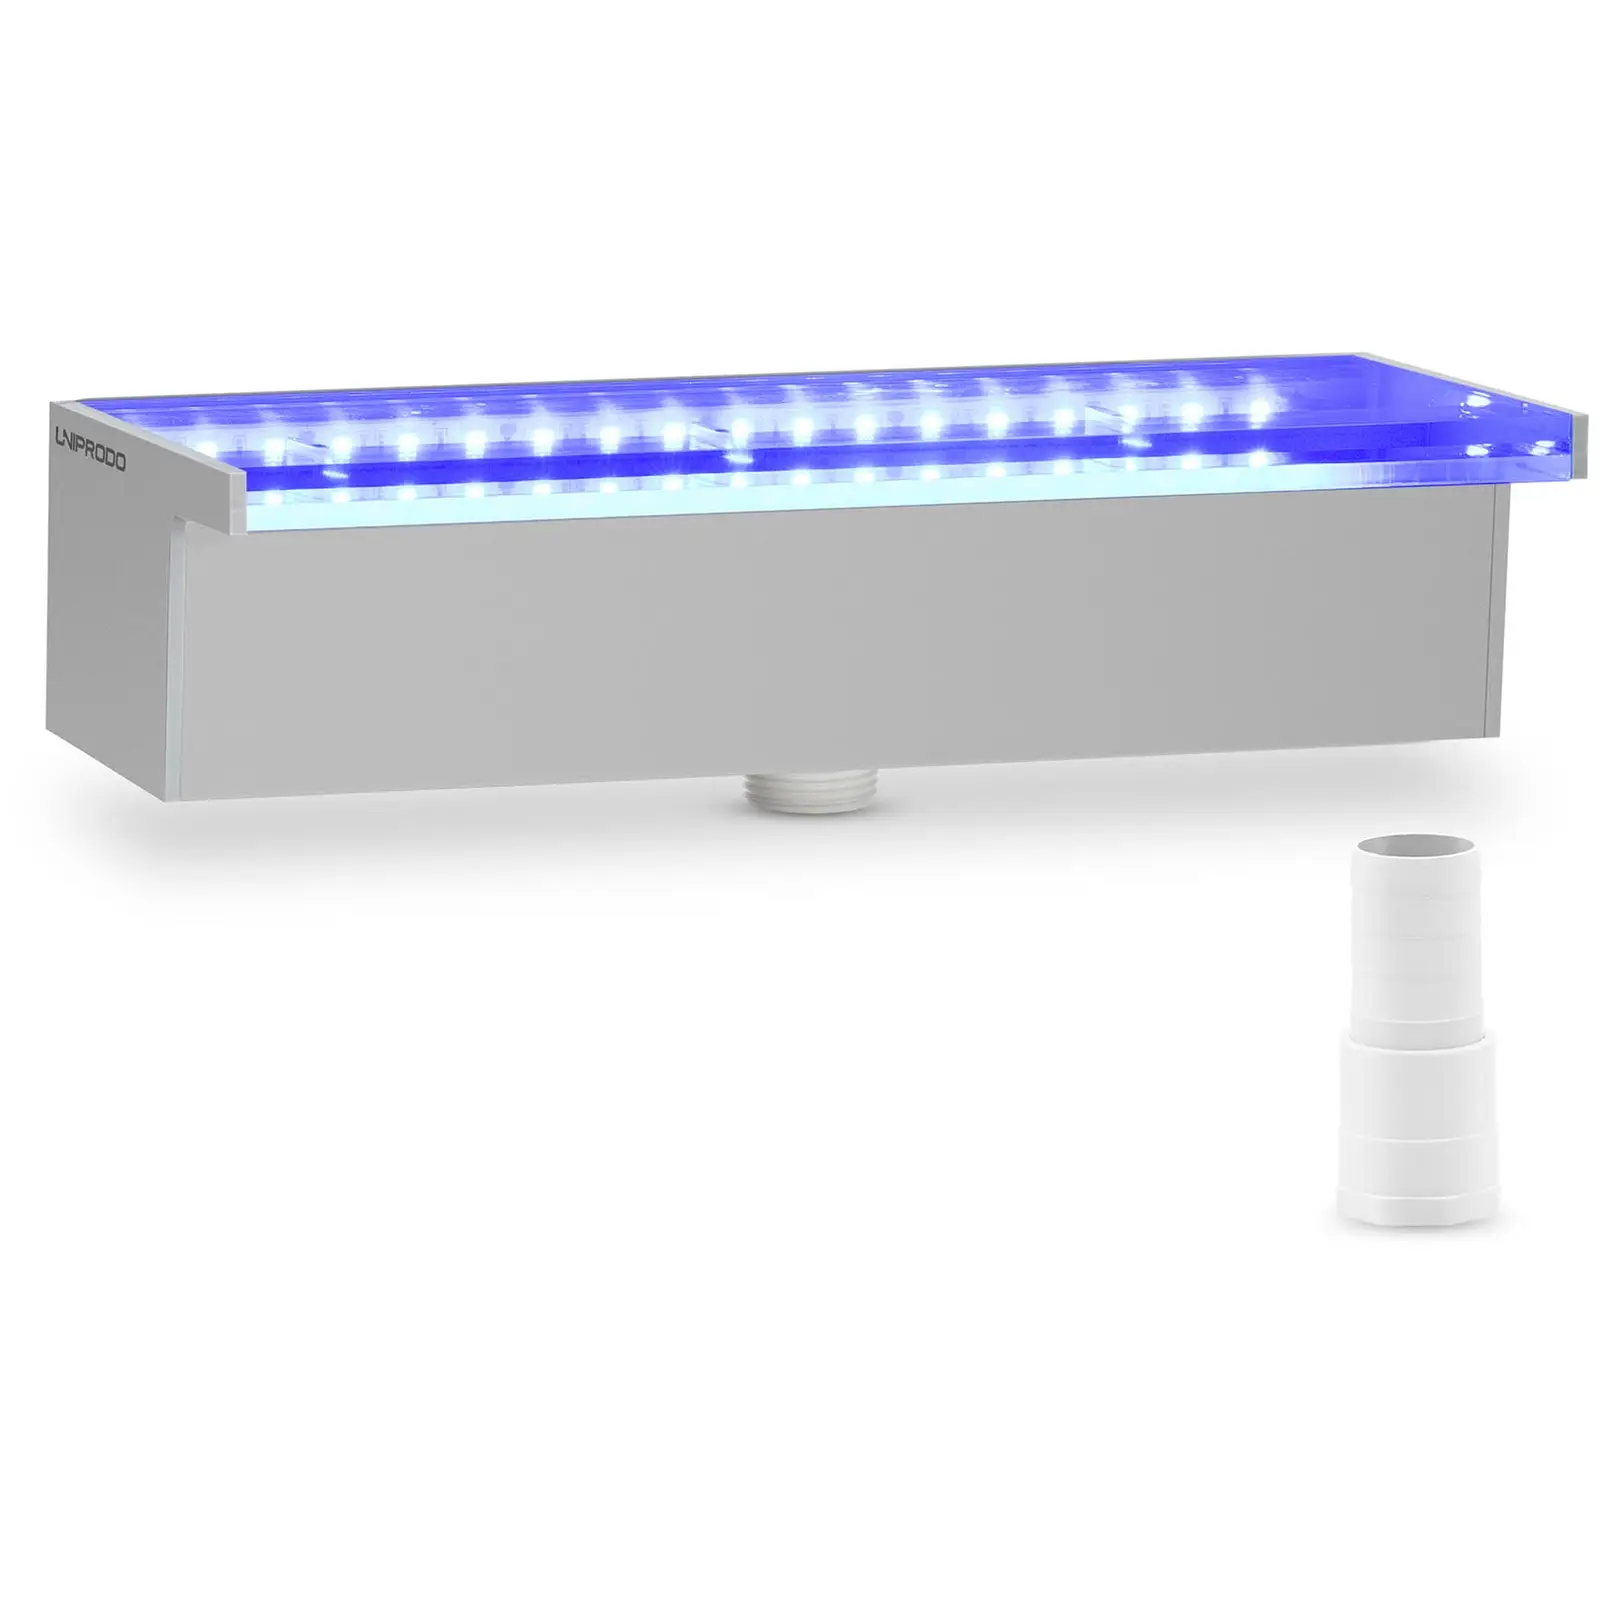 Duș de supratensiune - 30 cm - Iluminare cu LED-uri - Albastru / Alb - {{Lip_lenght}} mm ieșire de apă